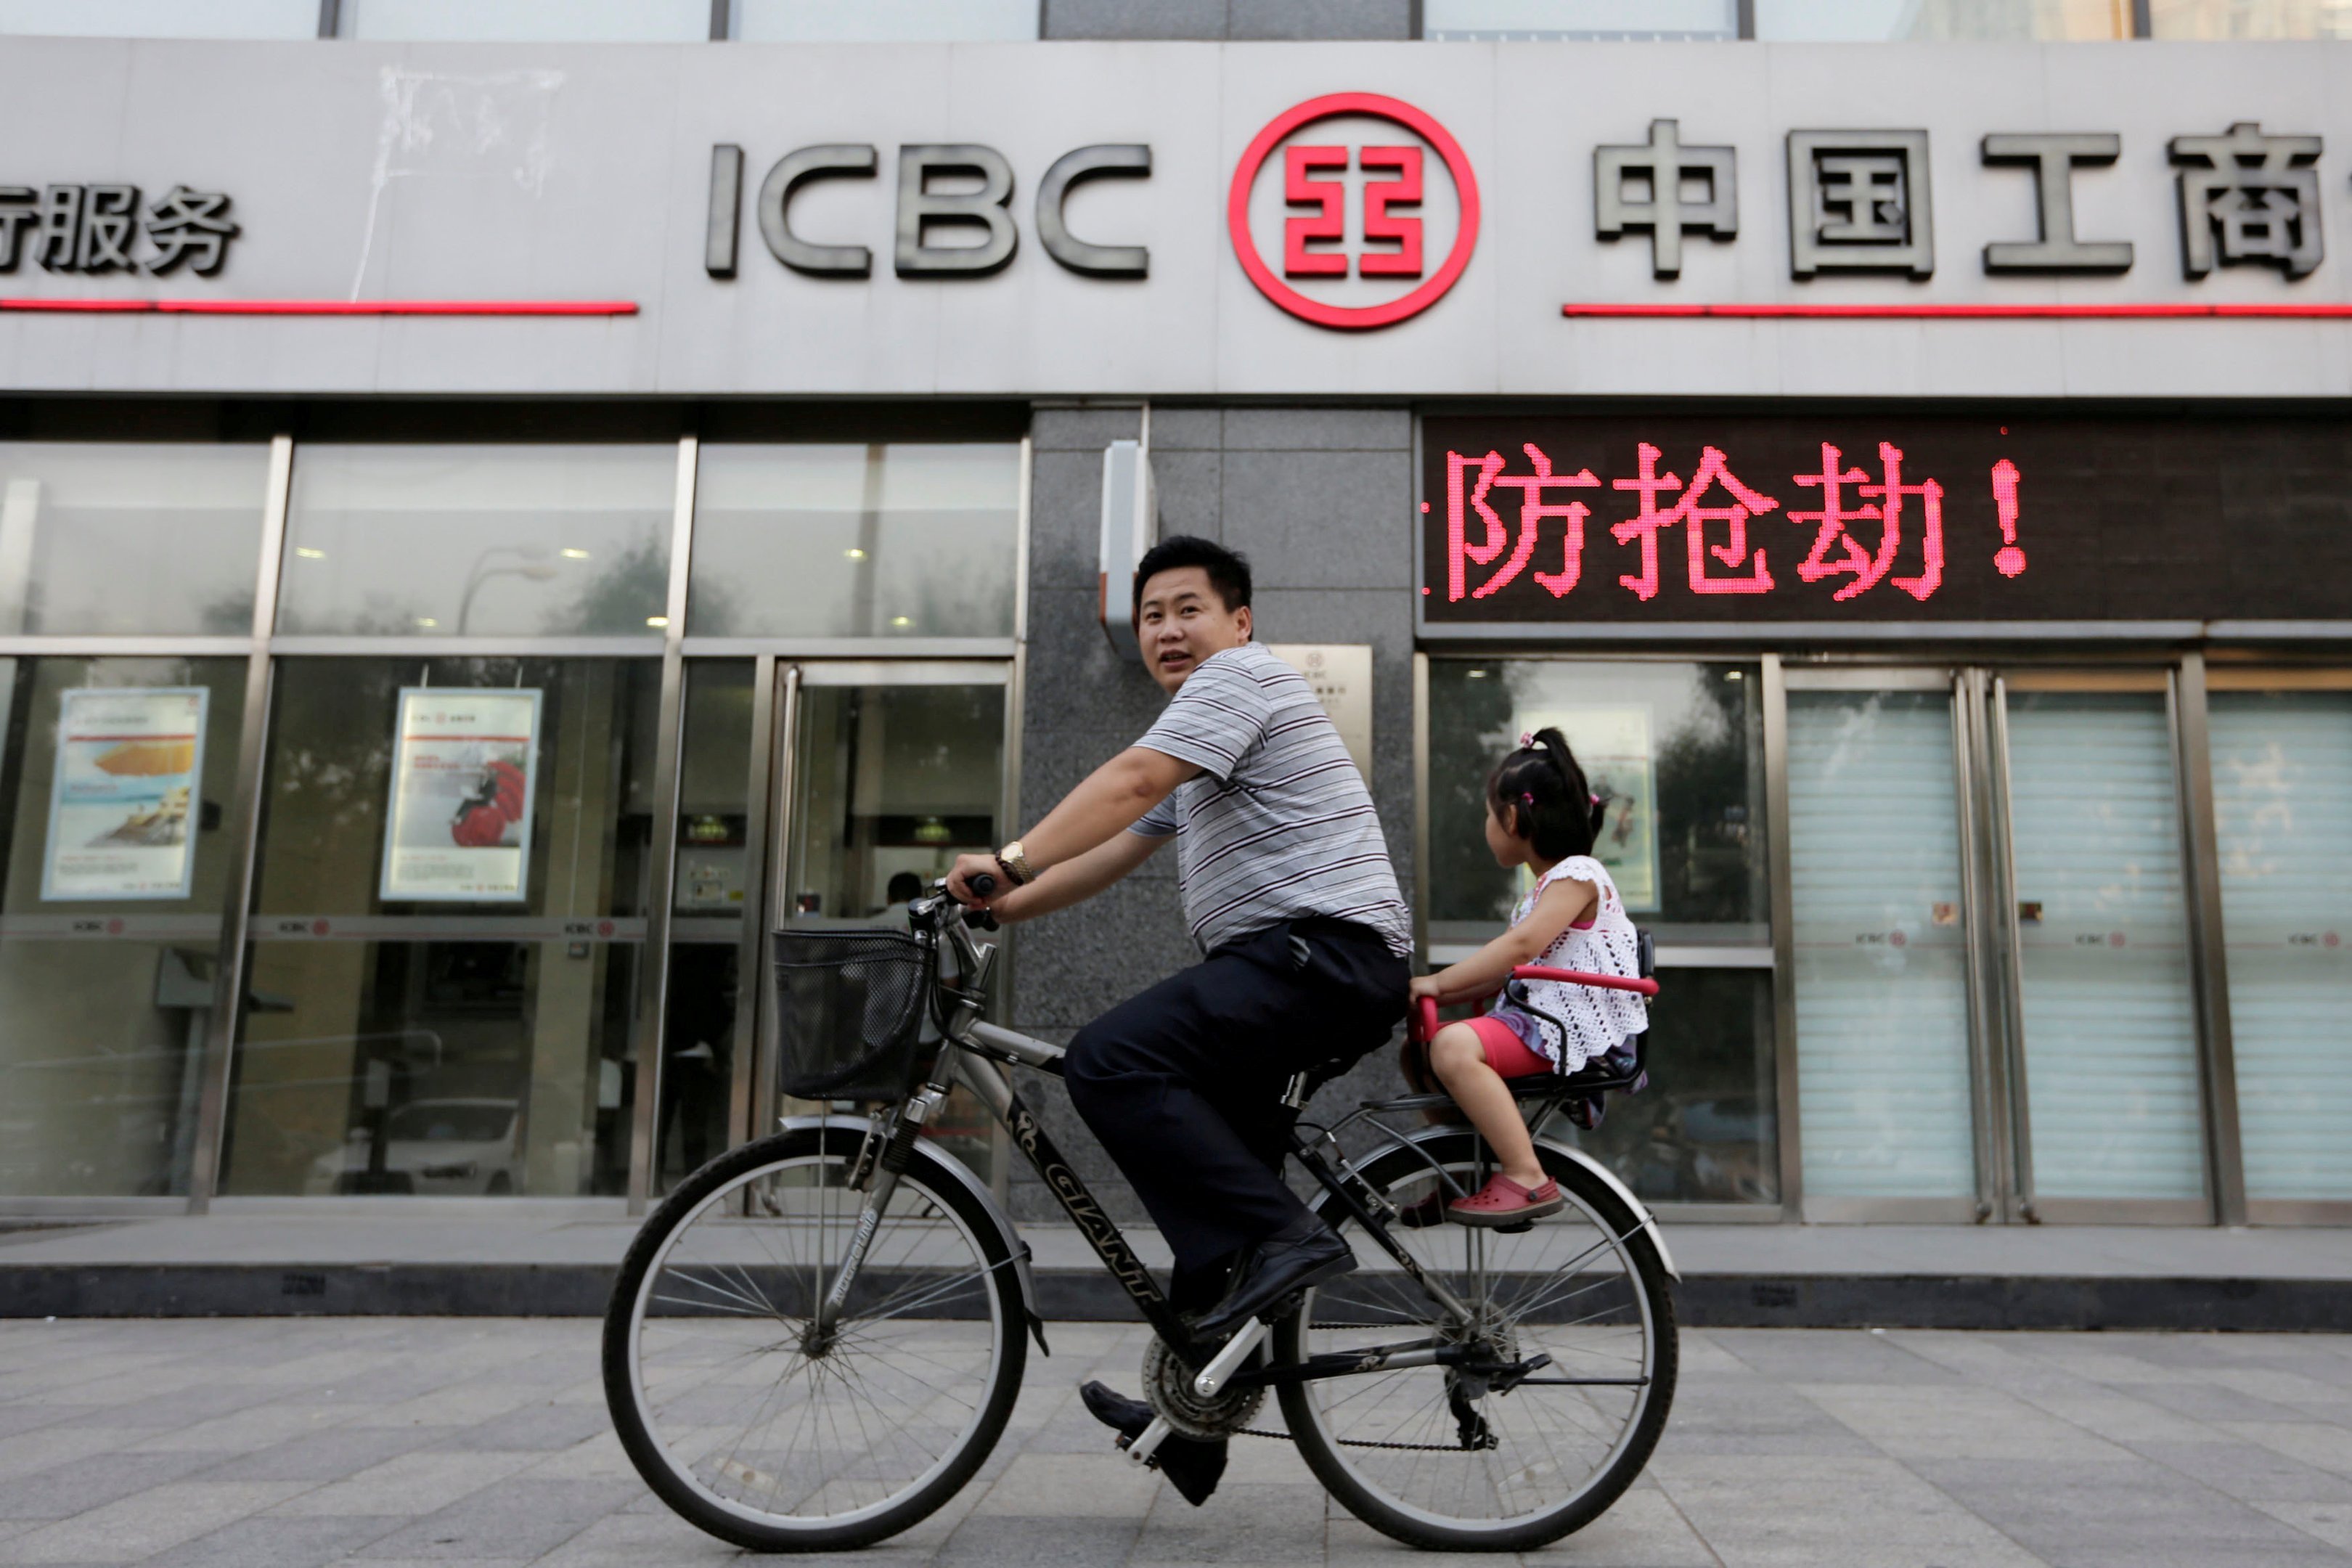 Homem e filha andam de bicicleta na frente de uma agência do banco ICBC, em Pequim, dia 26/06/2013